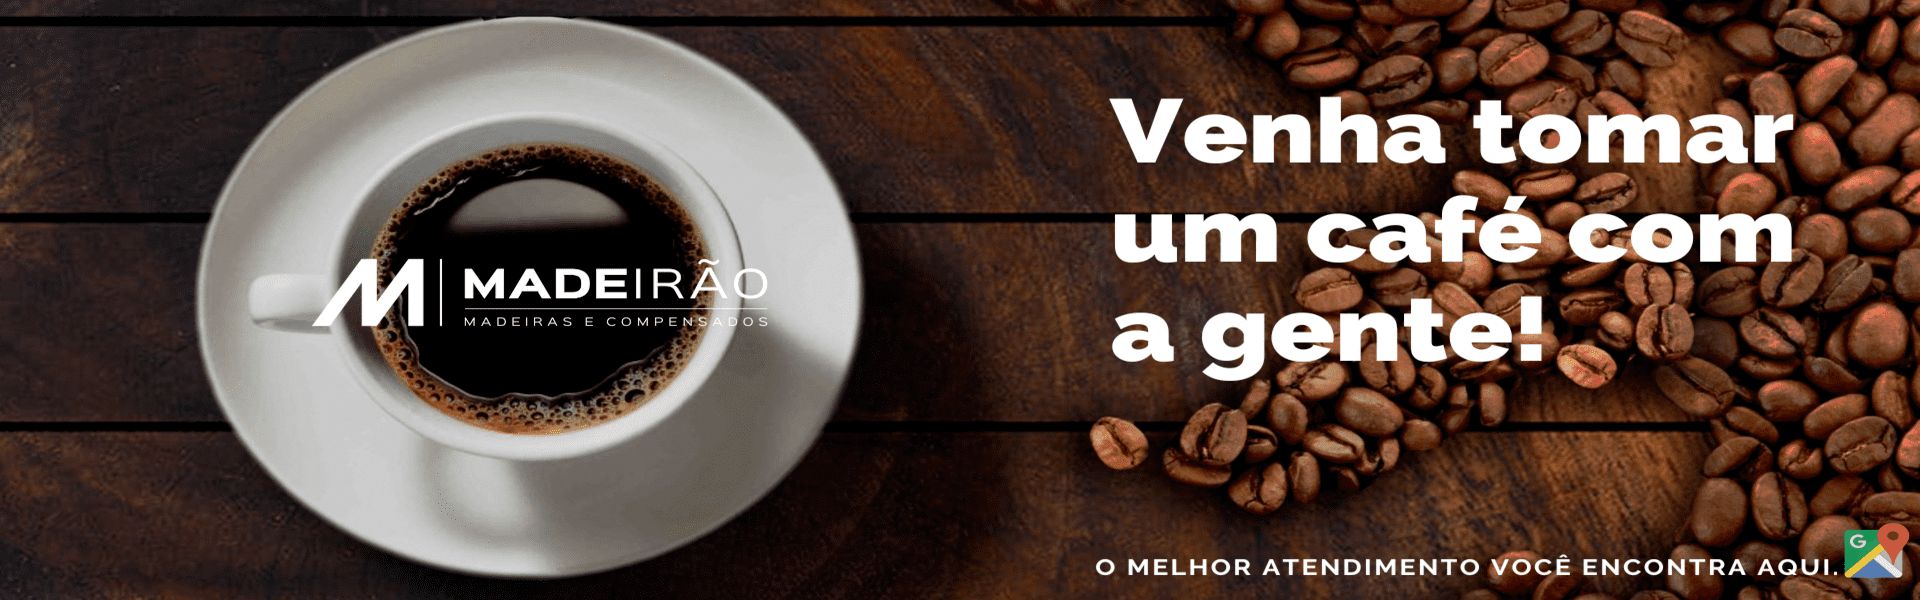 Venha tomar um café com a gente! | Madeirão Madeiras